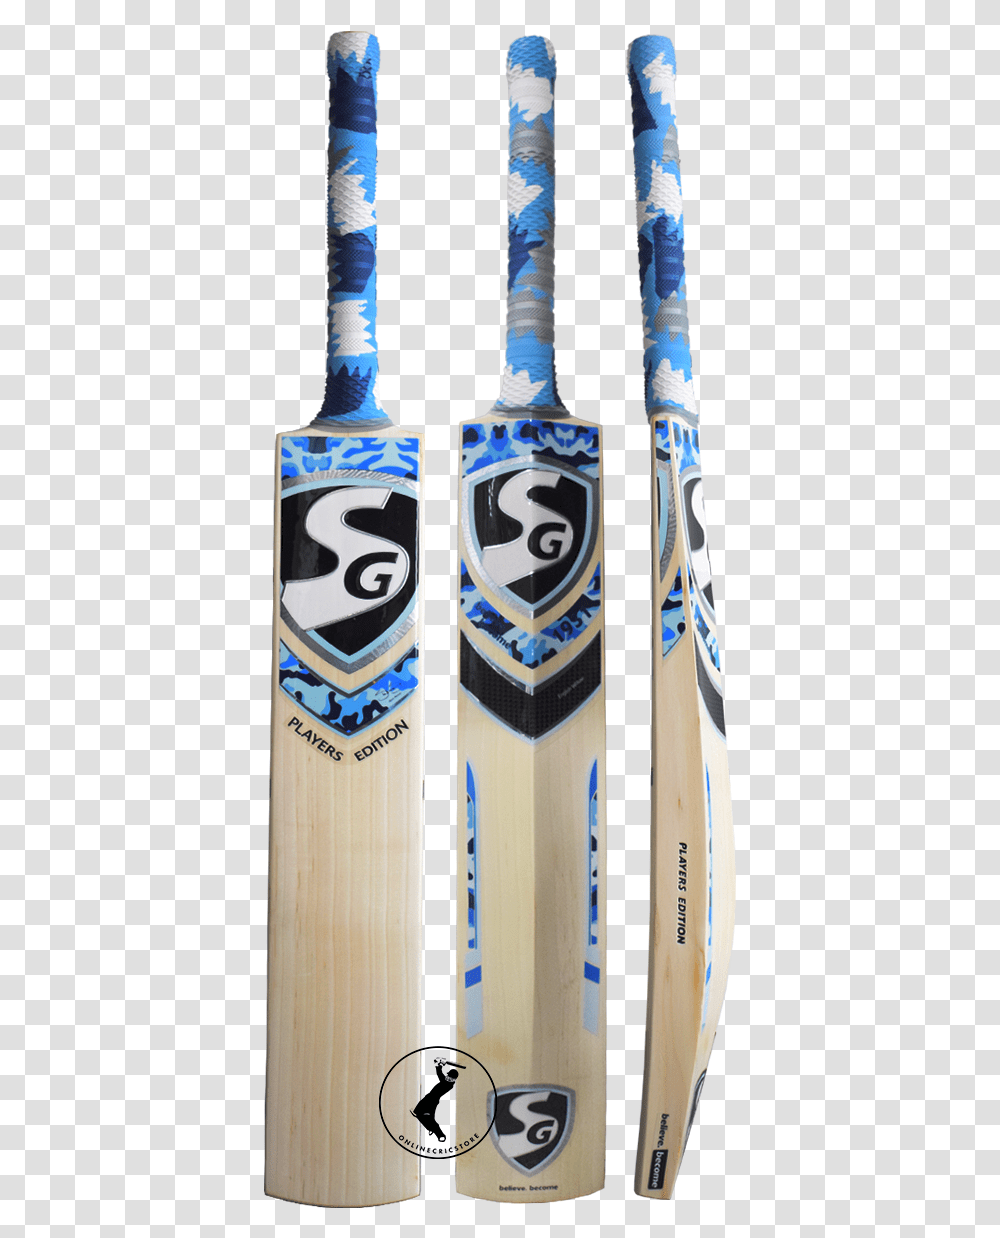 Top 3 Sg Cricket Bats Of Sg Savage Edition Bat, Sport, Beverage, Bottle Transparent Png